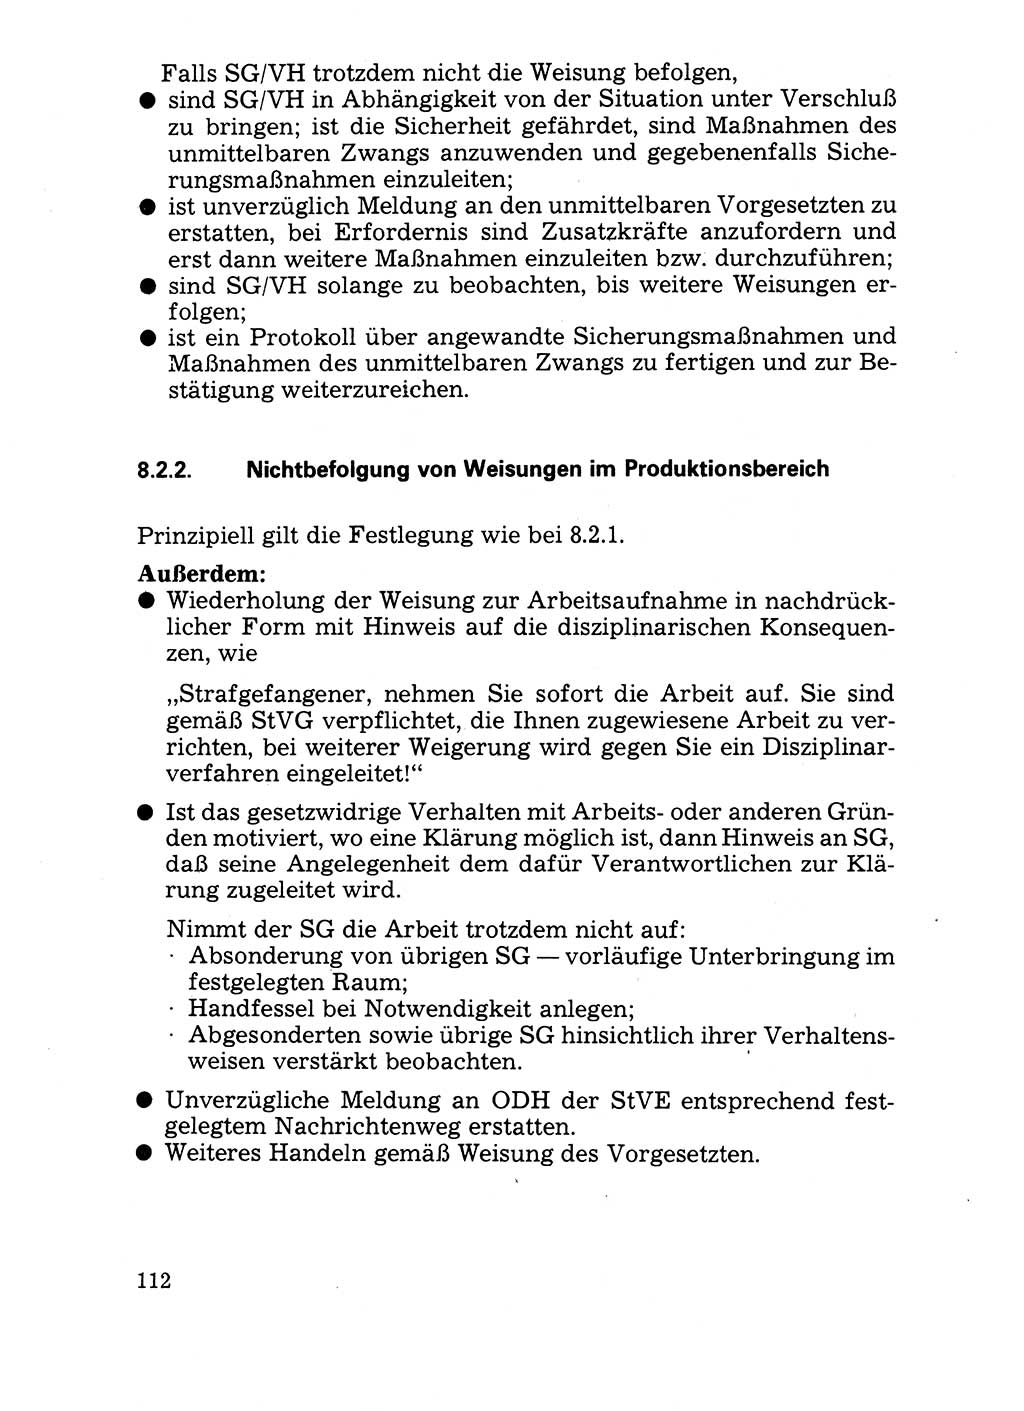 Handbuch für operative Dienste, Abteilung Strafvollzug (SV) [Ministerium des Innern (MdI) Deutsche Demokratische Republik (DDR)] 1981, Seite 112 (Hb. op. D. Abt. SV MdI DDR 1981, S. 112)